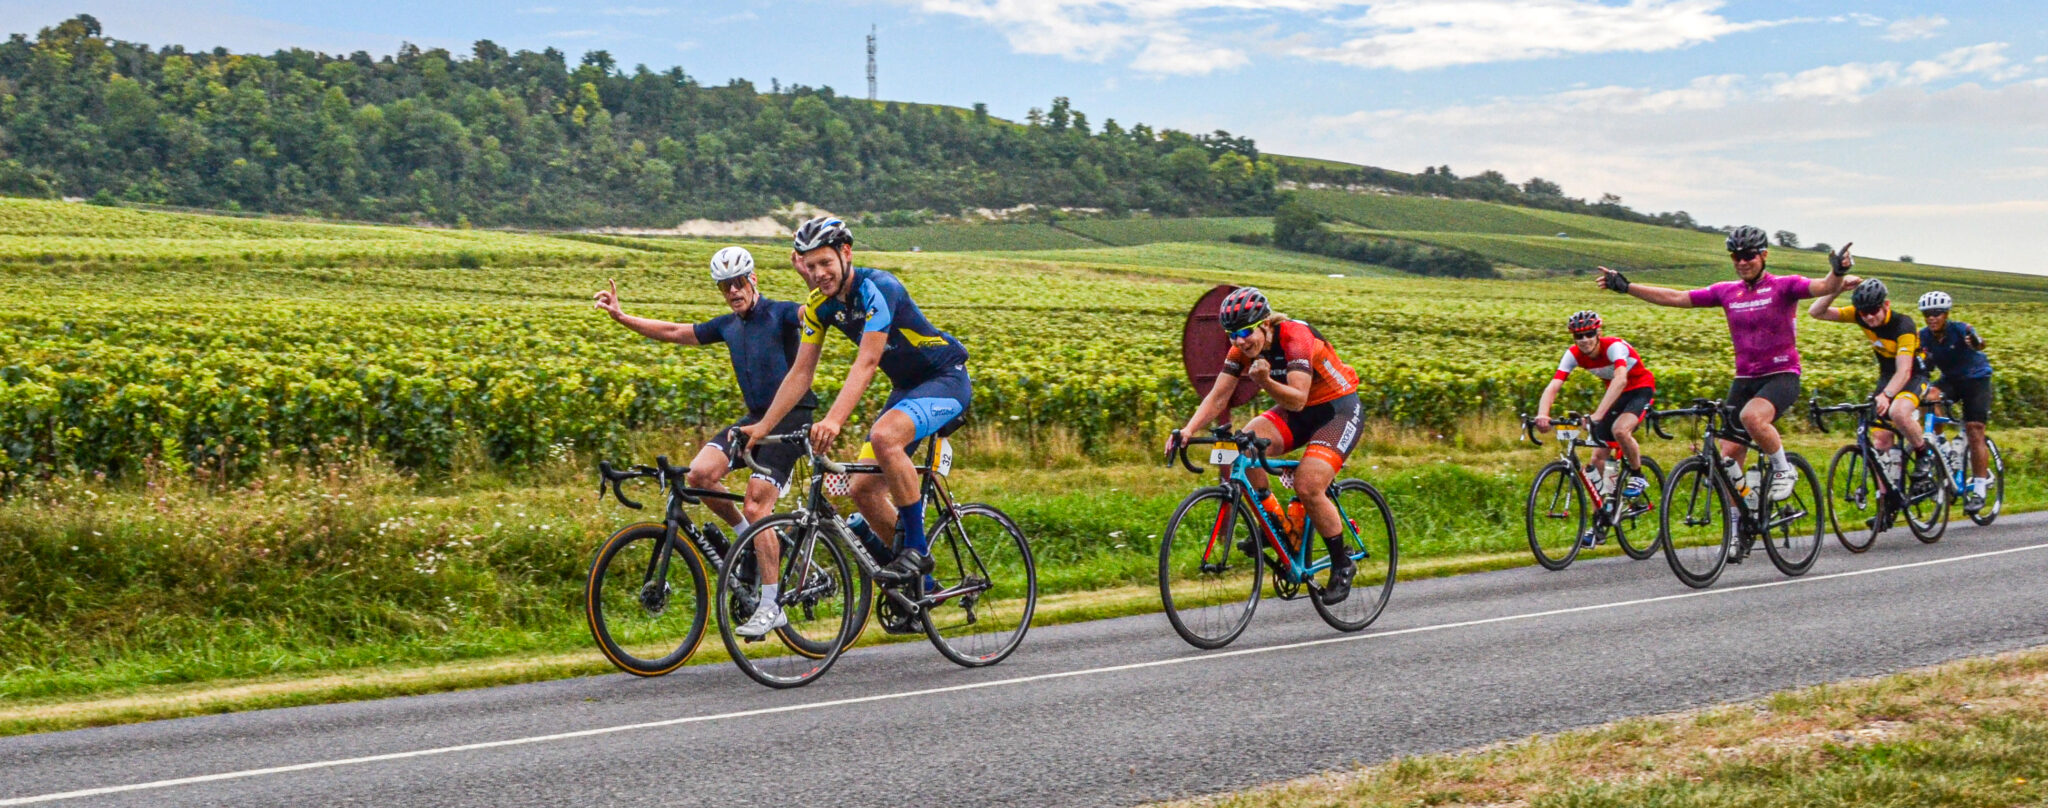 Fietsvakantie Frankrijk wielrenners fietsen bij Reims door champagnevelden